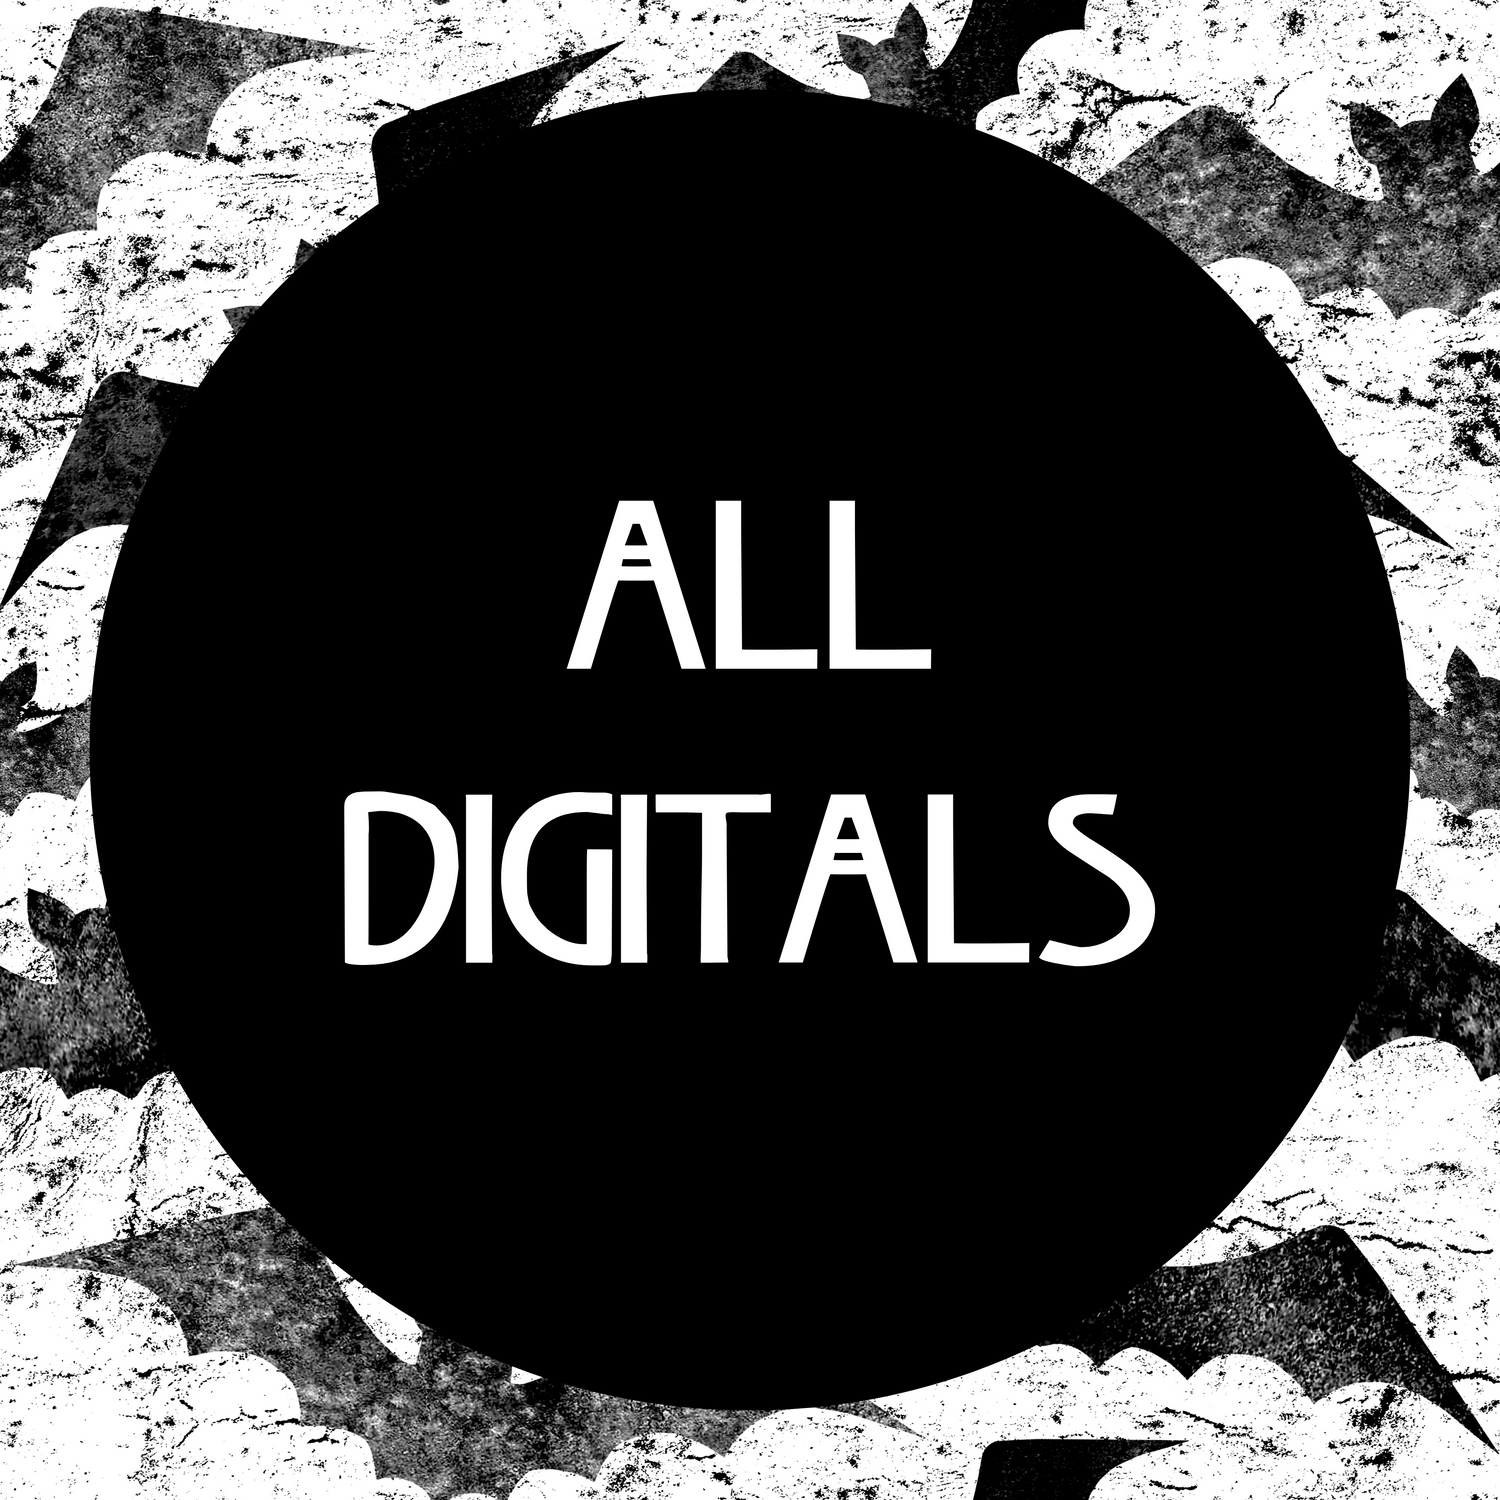 All Digitals